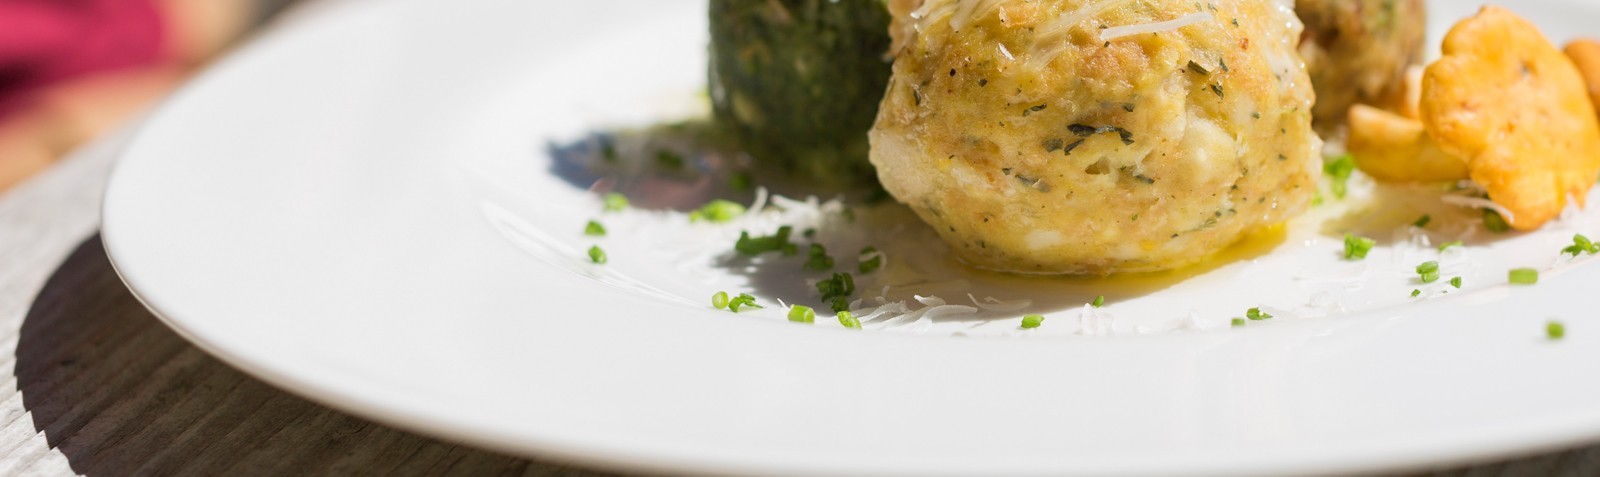 Canederli e Spatzle, i primi piatti più famosi dell'Alto Adige